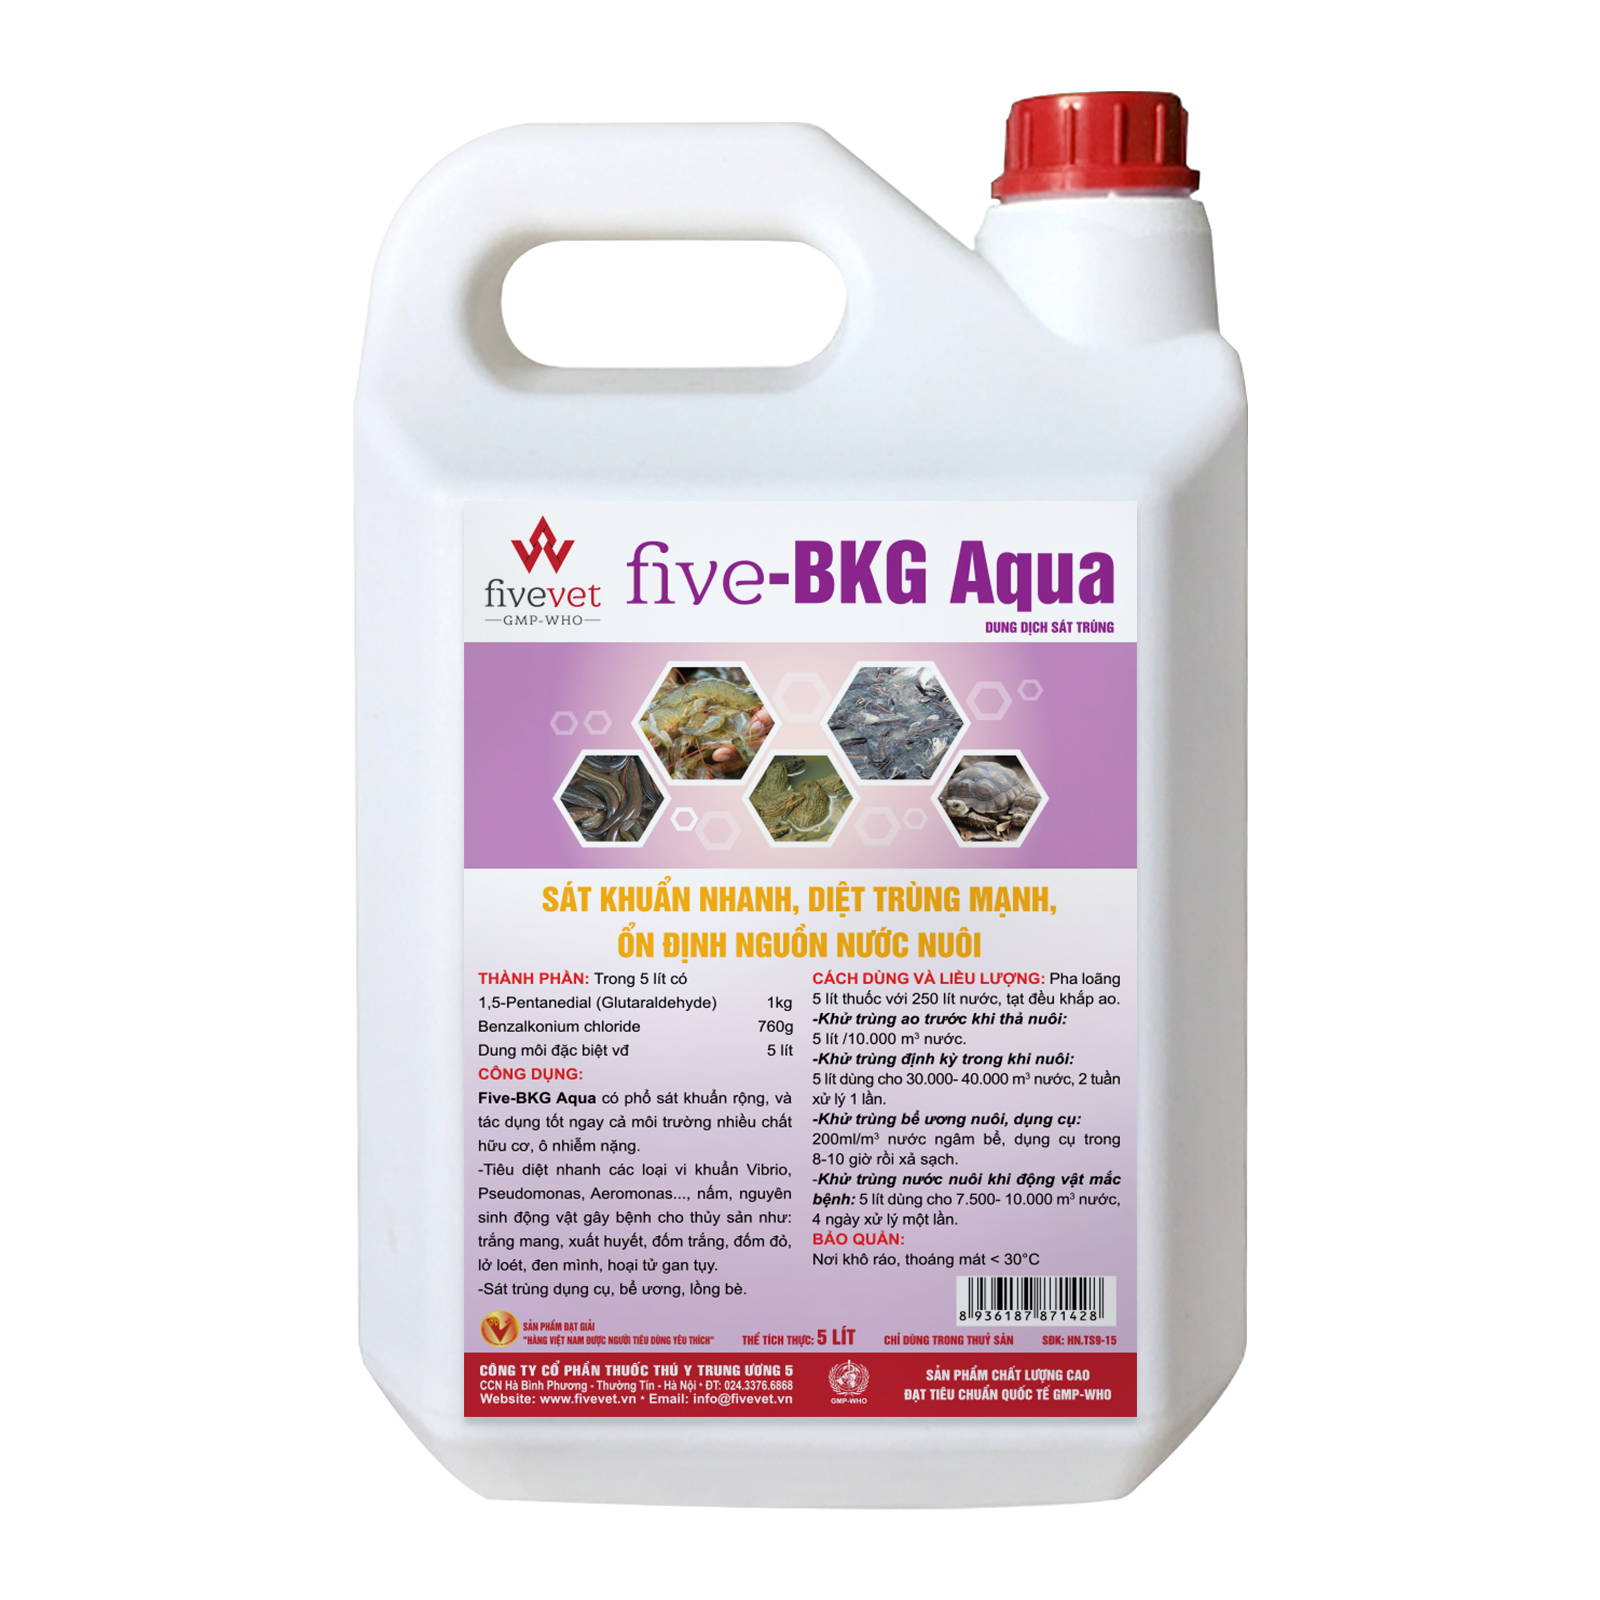 Five-BKG Aqua